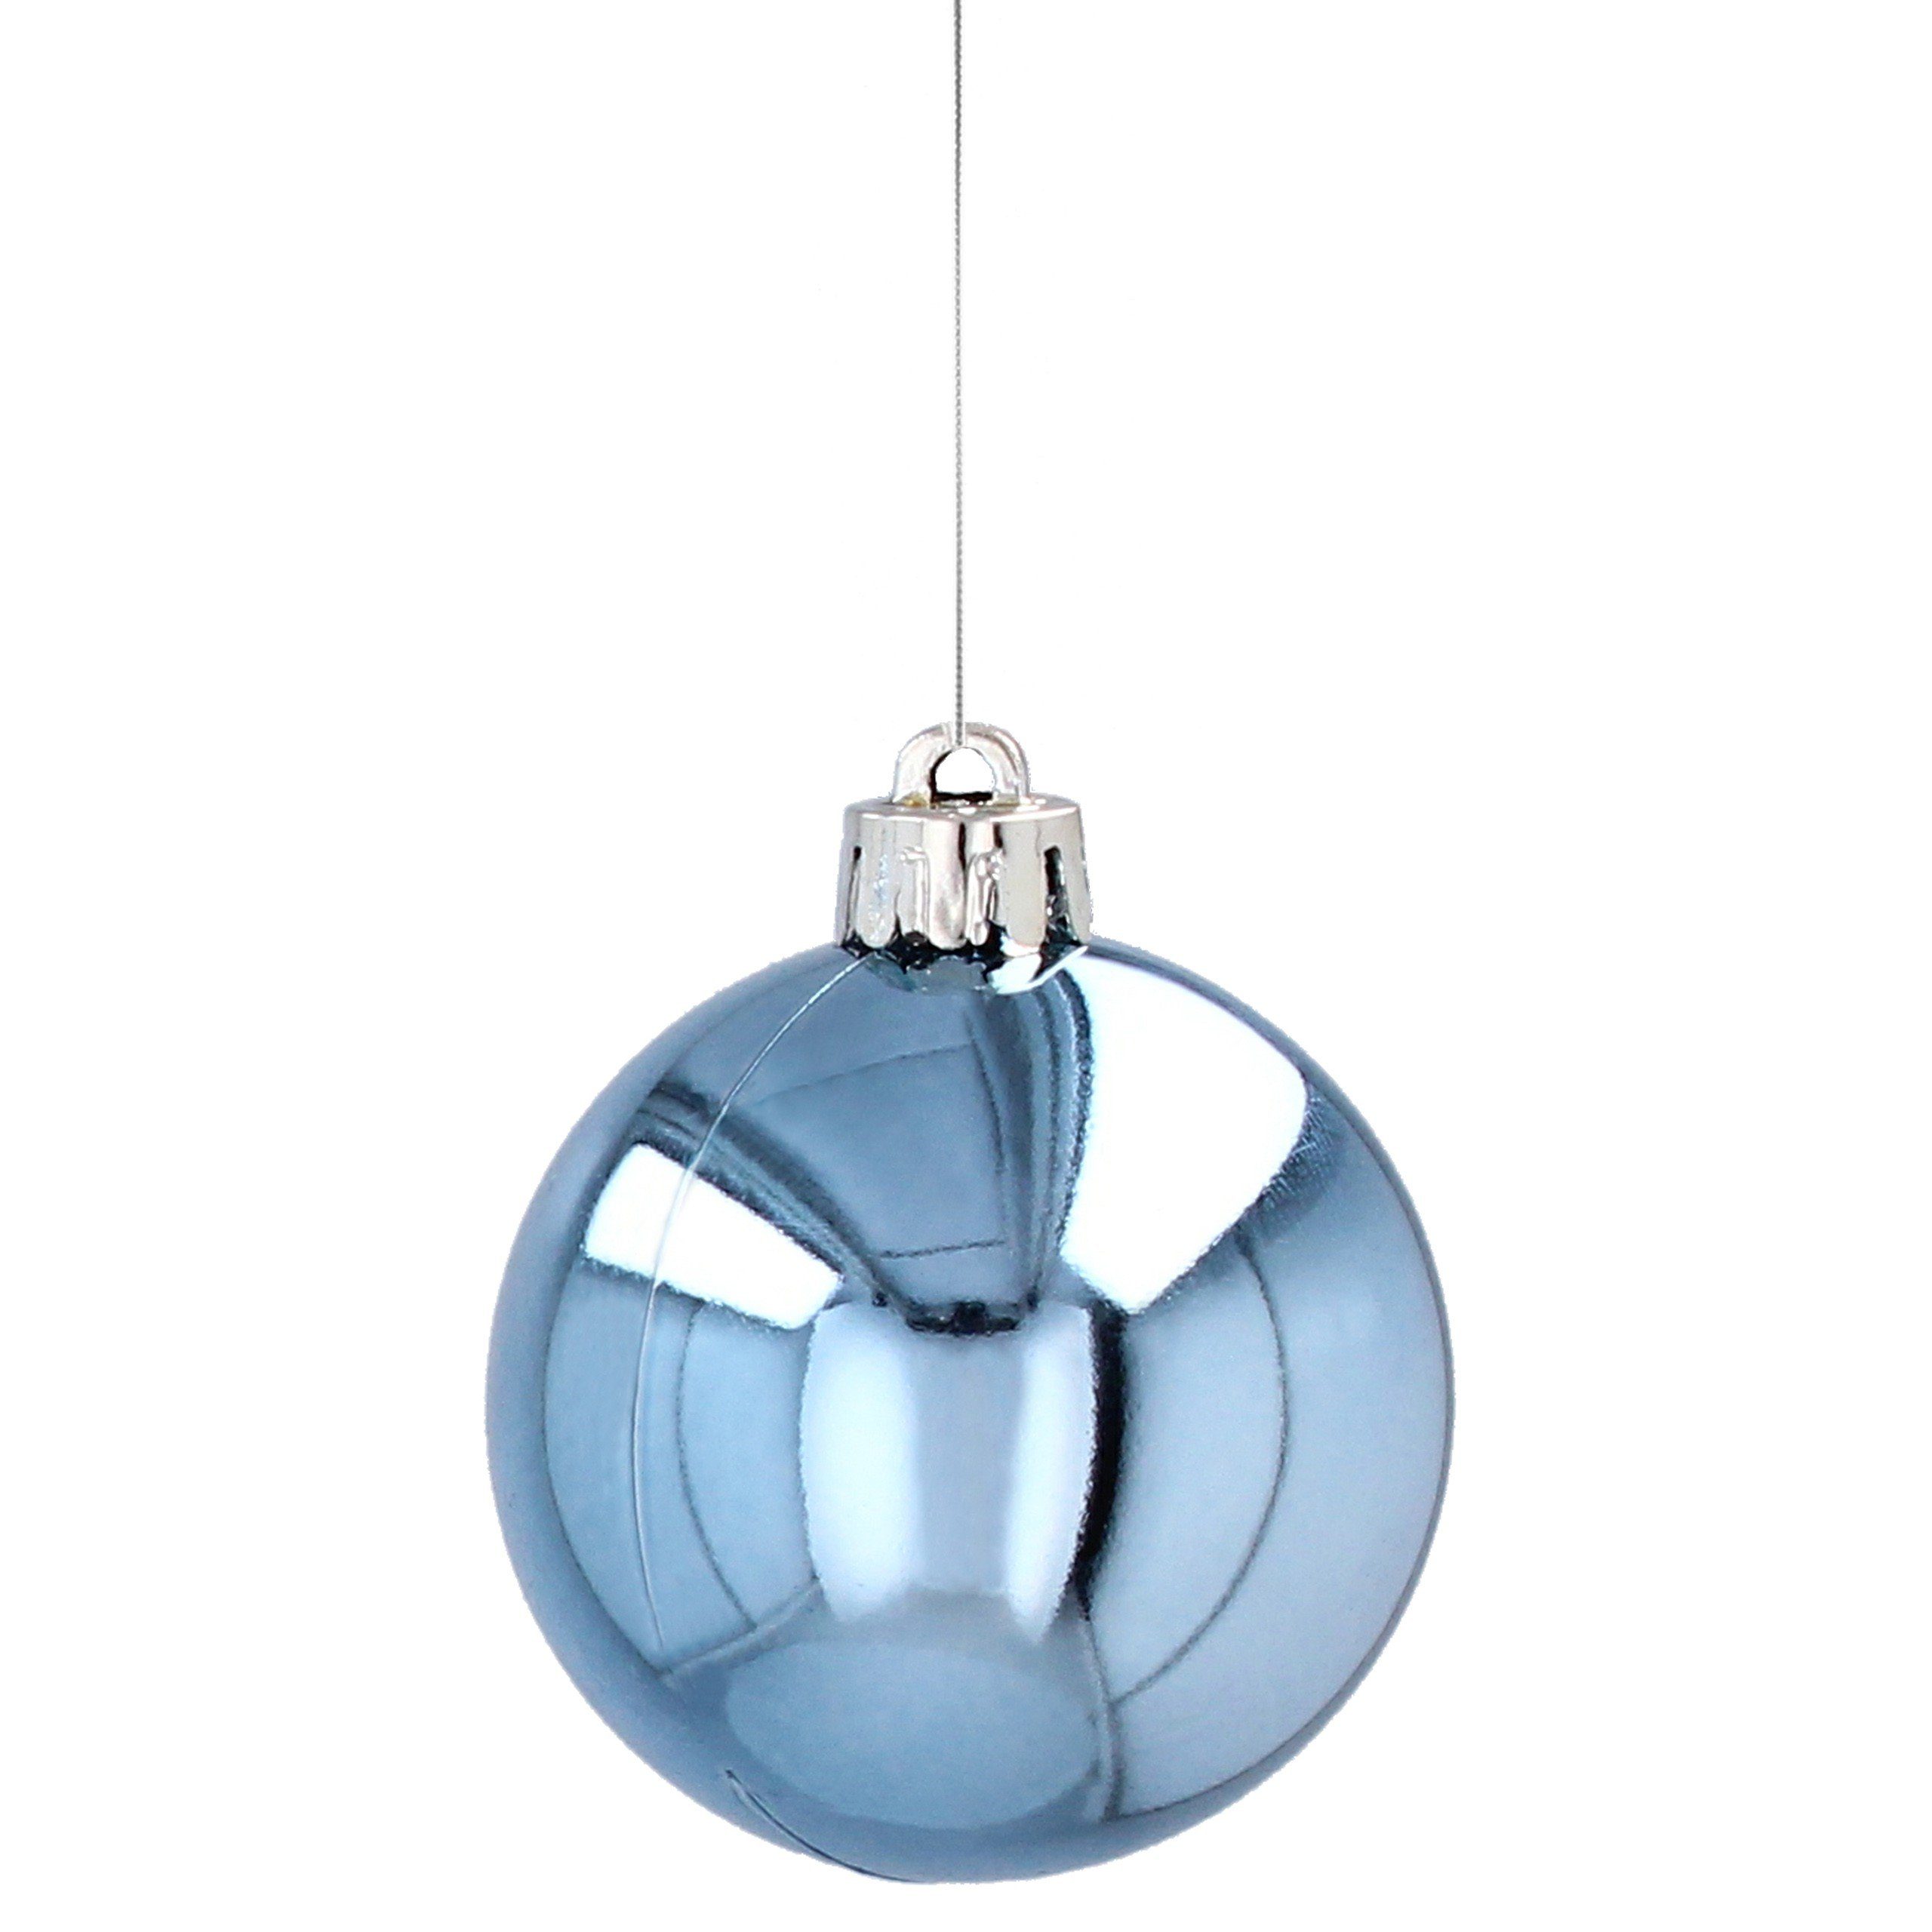 Sarcia.eu Weihnachtsbaumkugel Blaue Christbaumkugeln Kunststoff Stück 24 5cm, aus